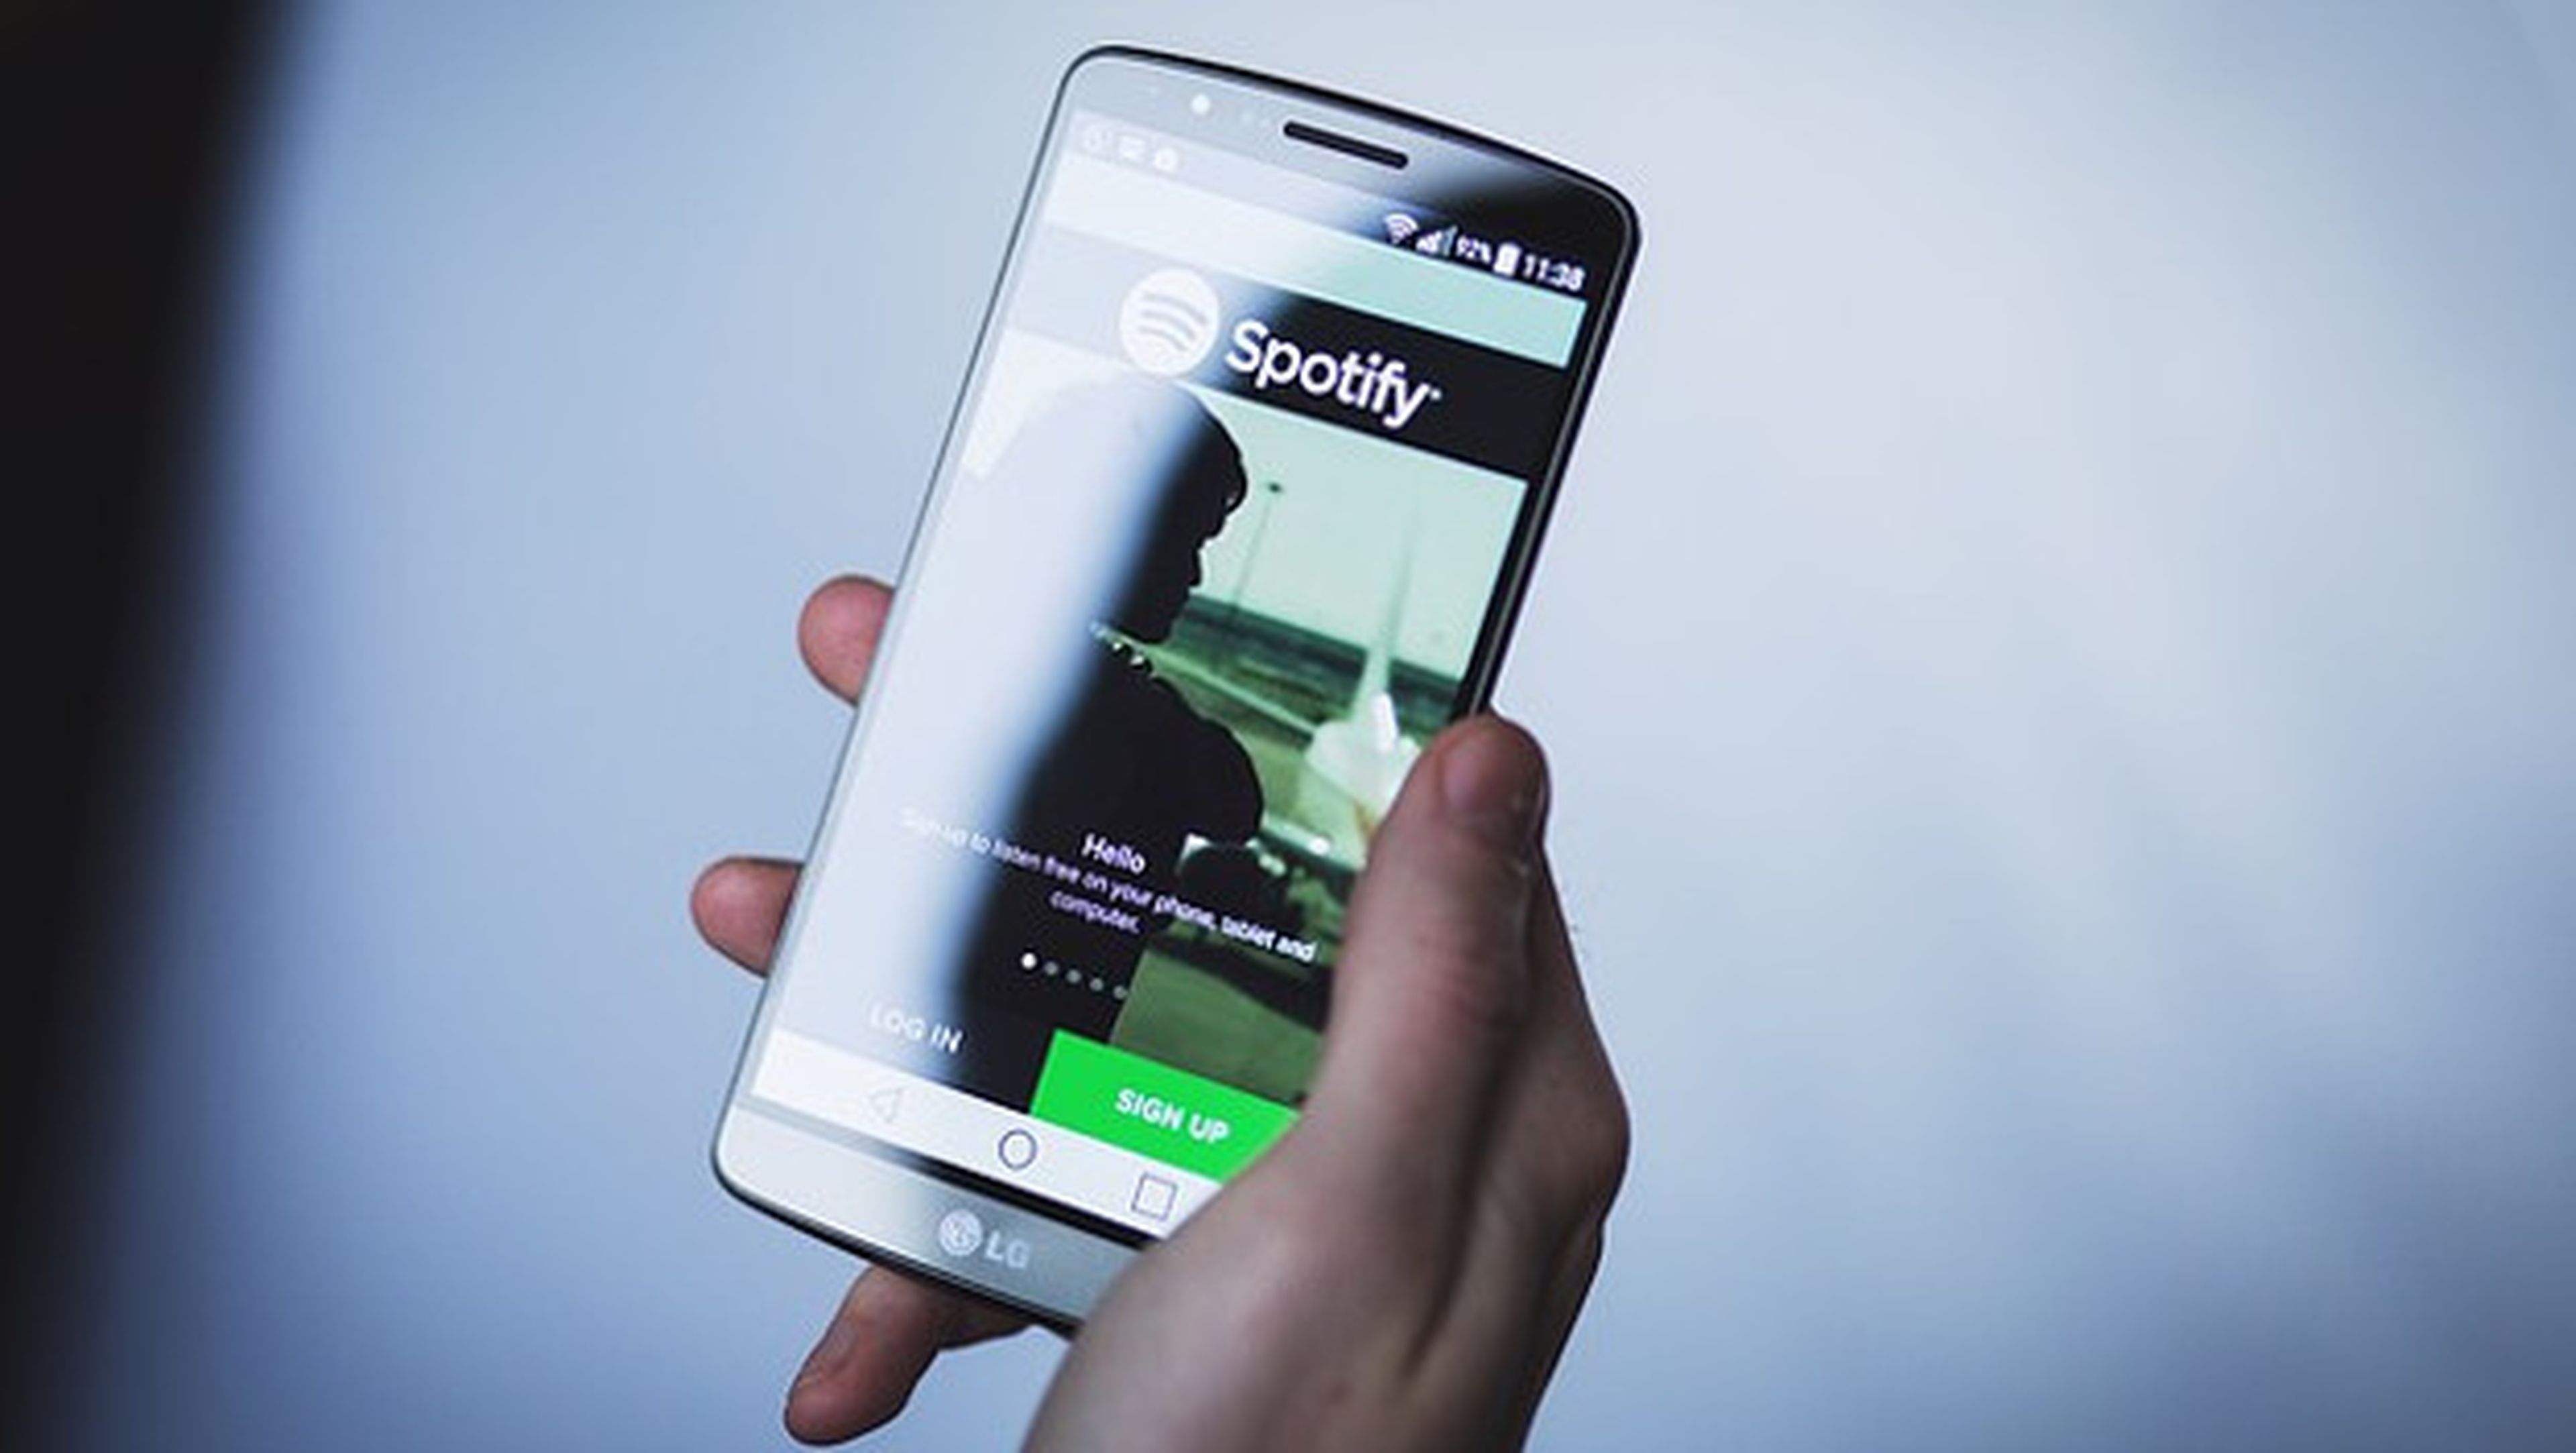 Los ingresos de la industria musical empiezan a subir gracias a las aplicaciones como Spotify.